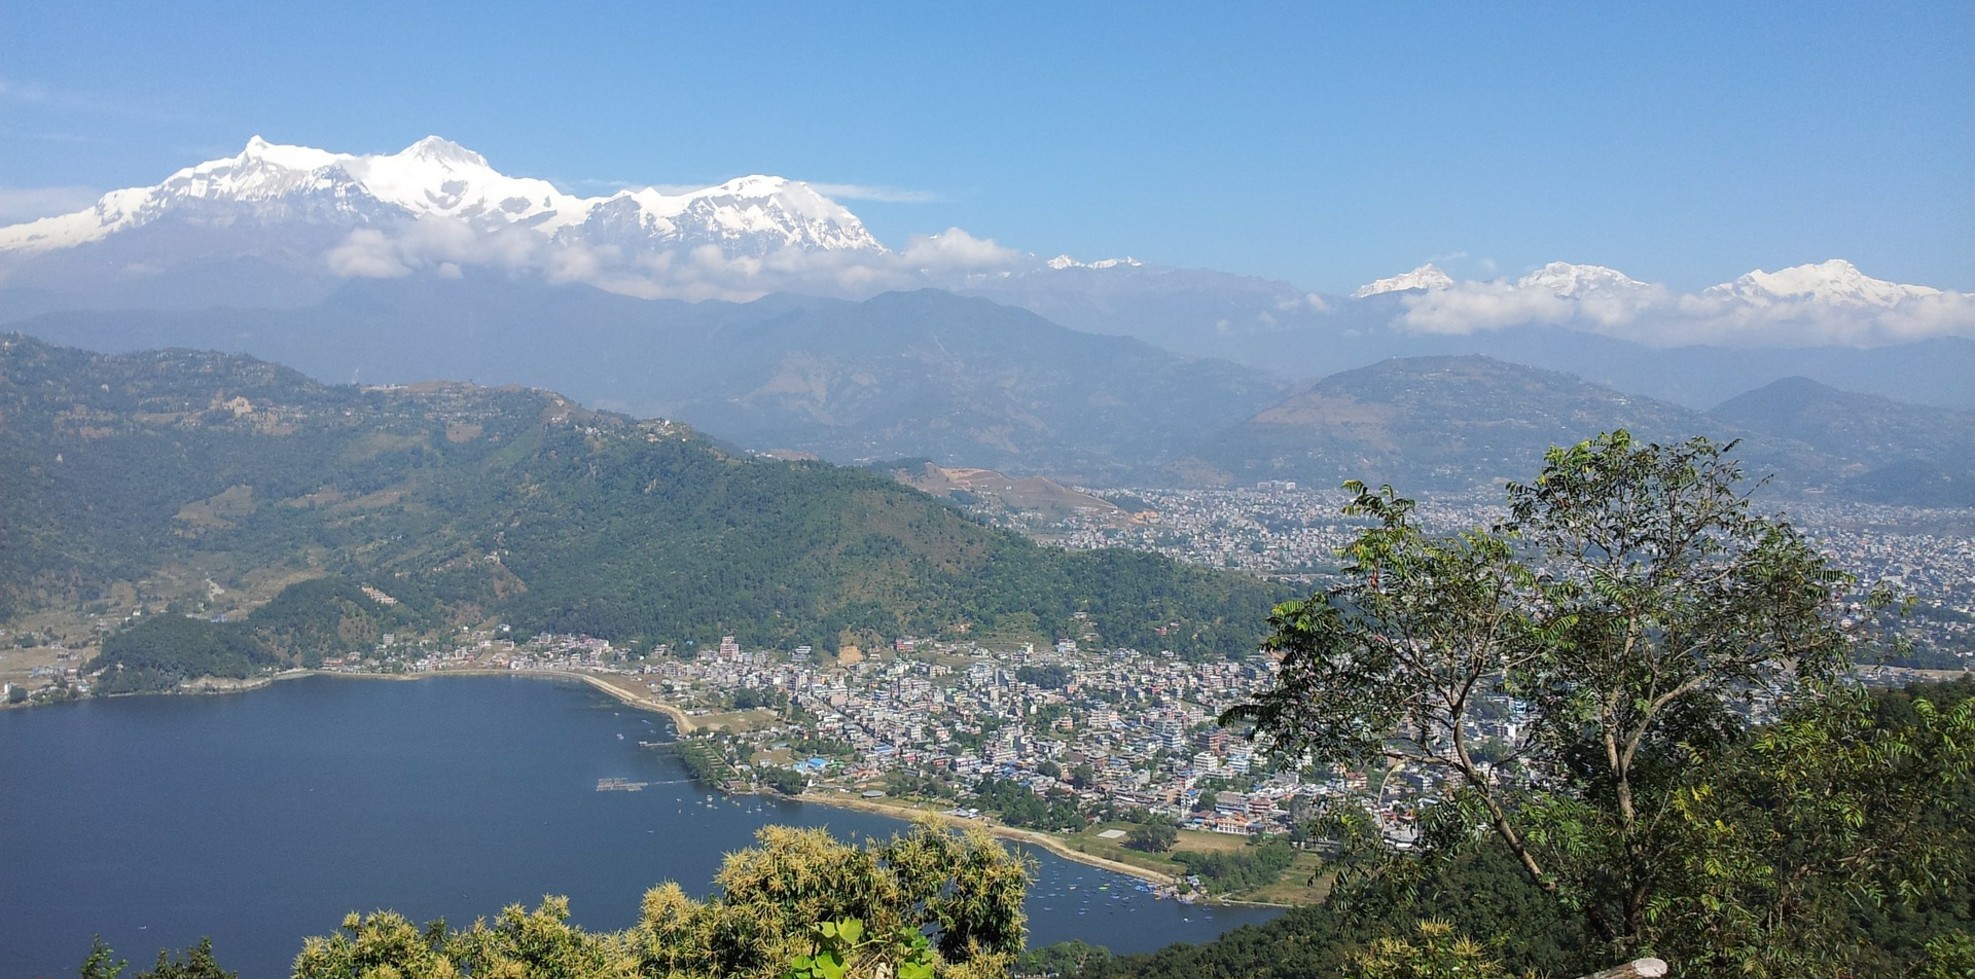 One-week Educational Trip to Nepal